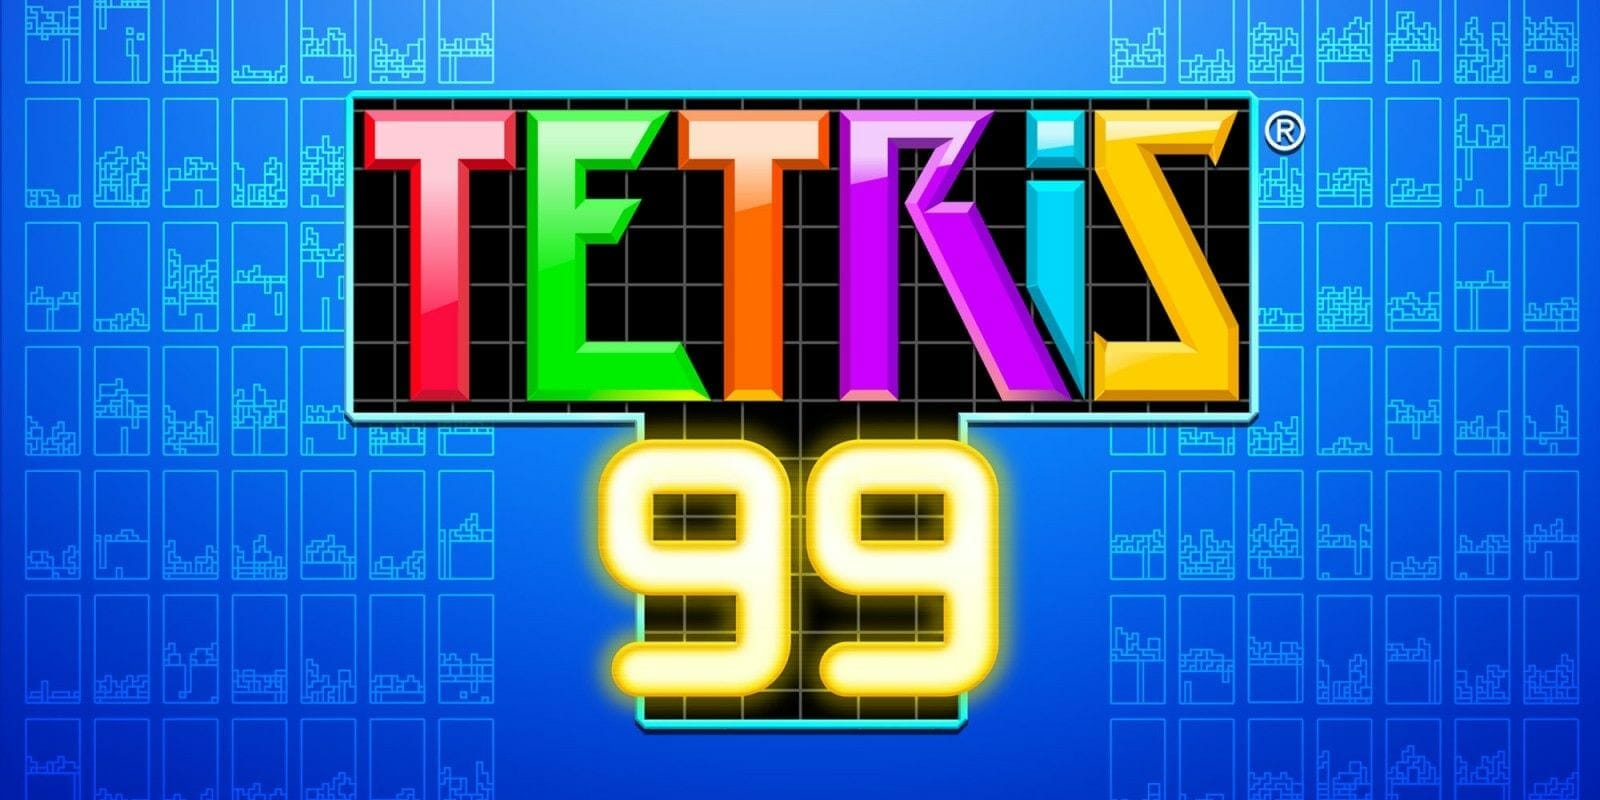 Tetris 99 Release Date for EU